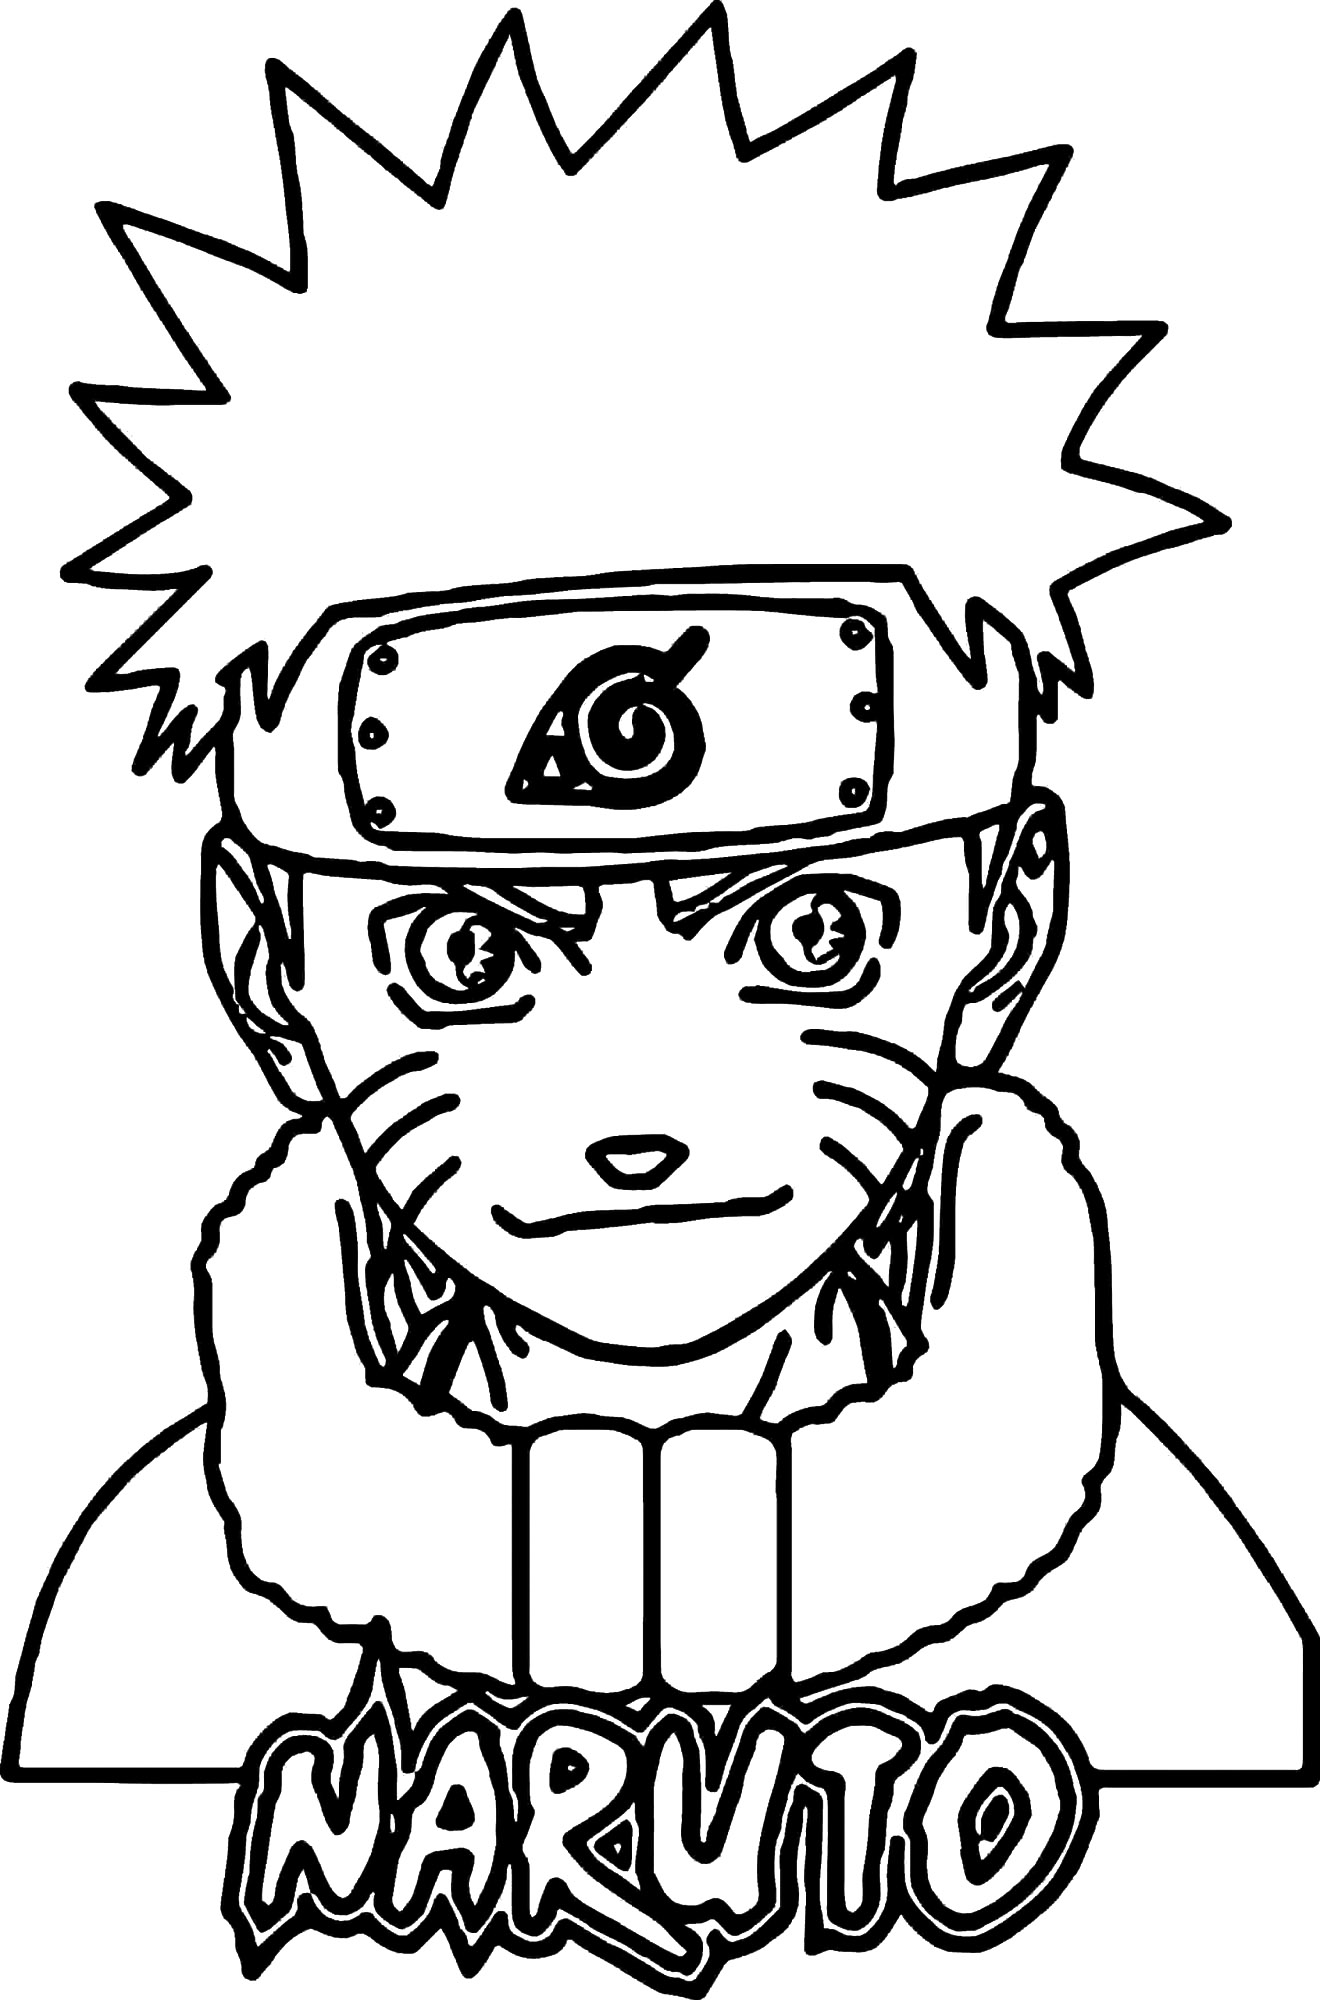 Naruto in de kindertijd kleurplaat